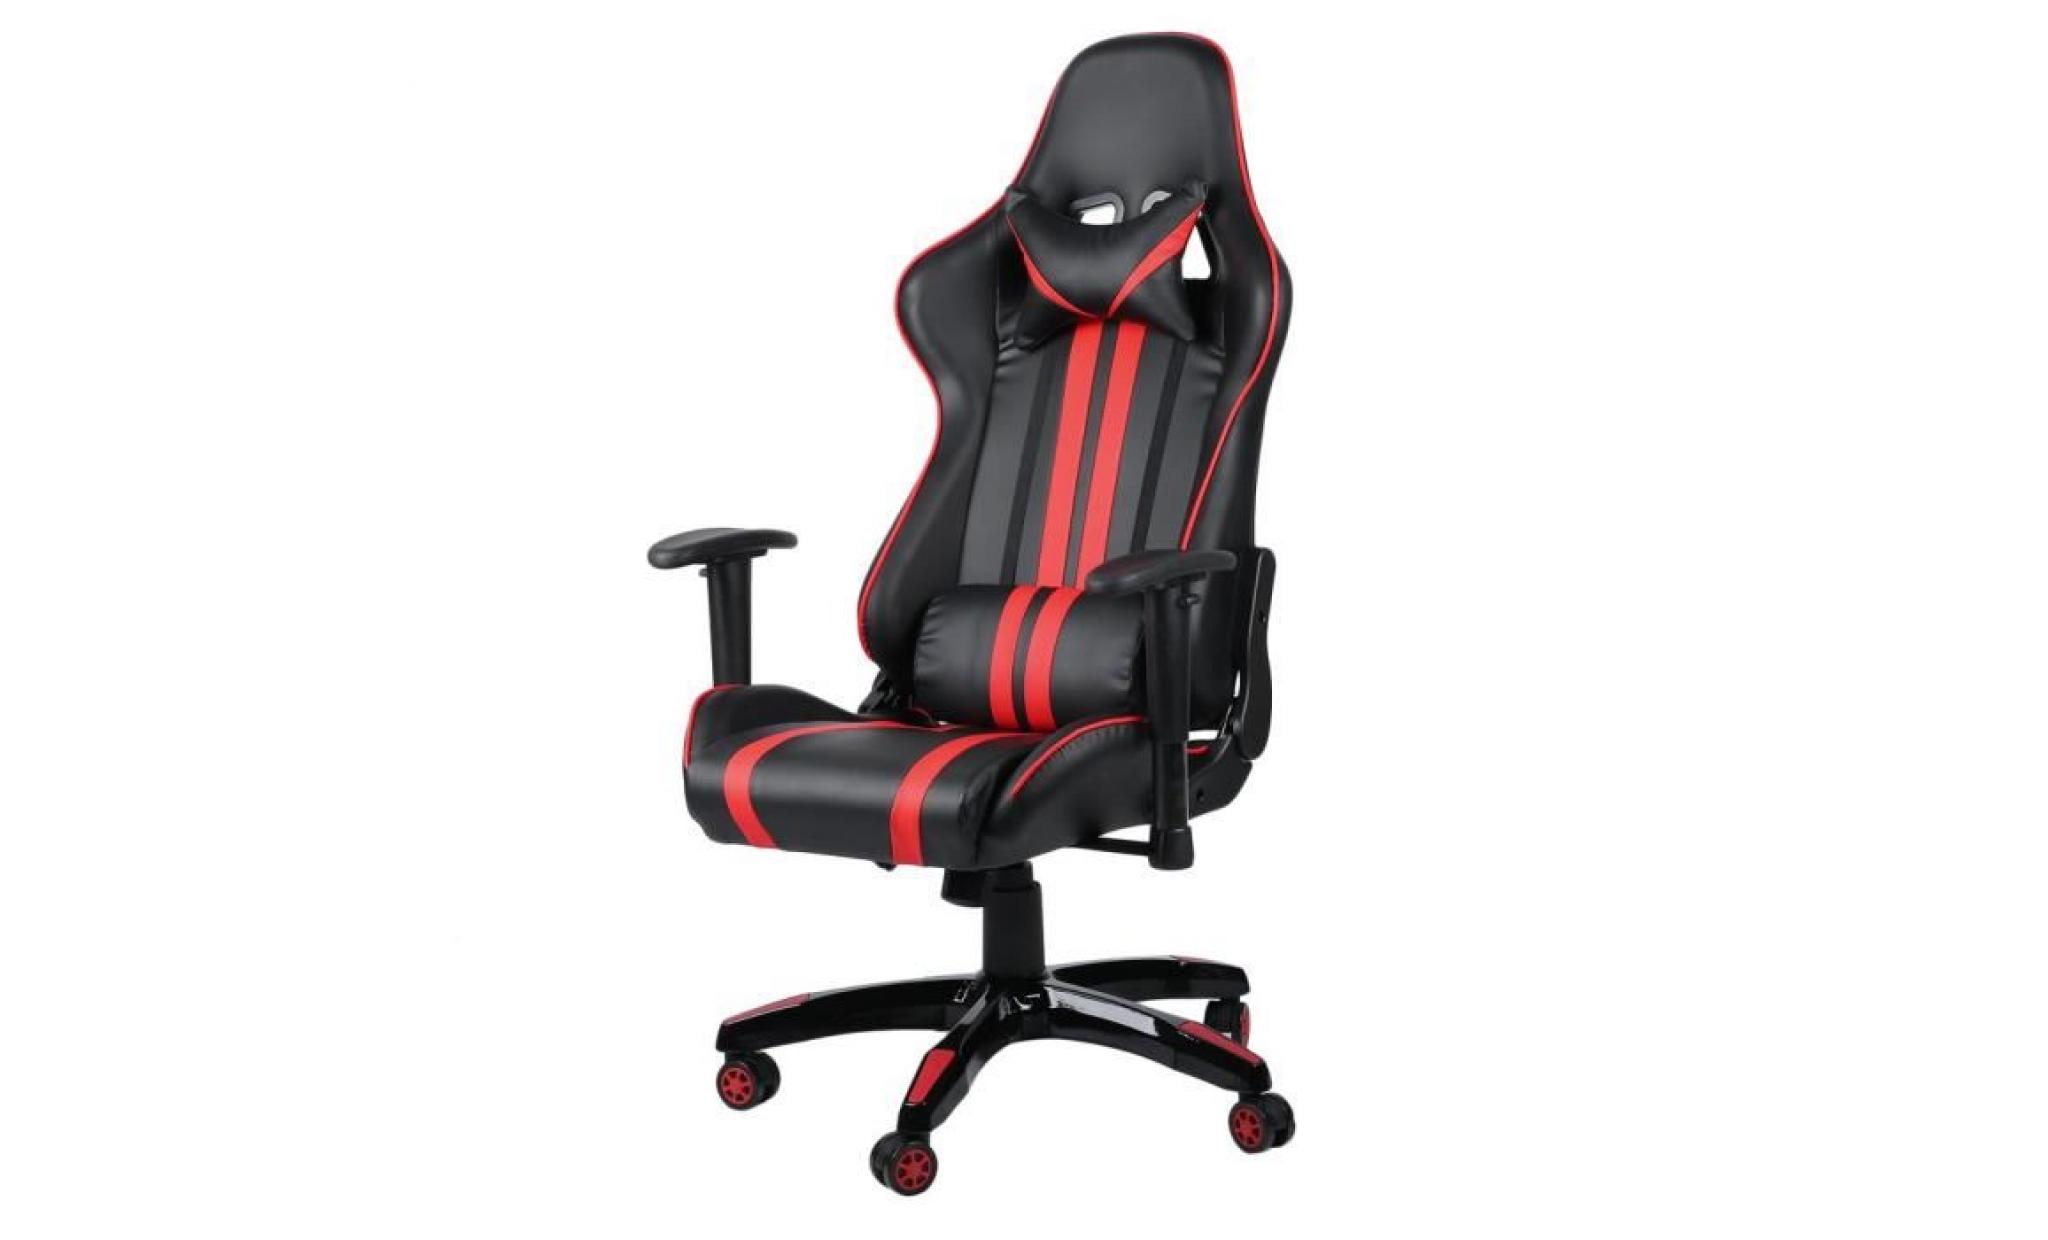 leshp® leshp® 2018 siège gaming fauteuil gamer chaise de jeu de bureau roues 360° rotation siège pu rouge et noir